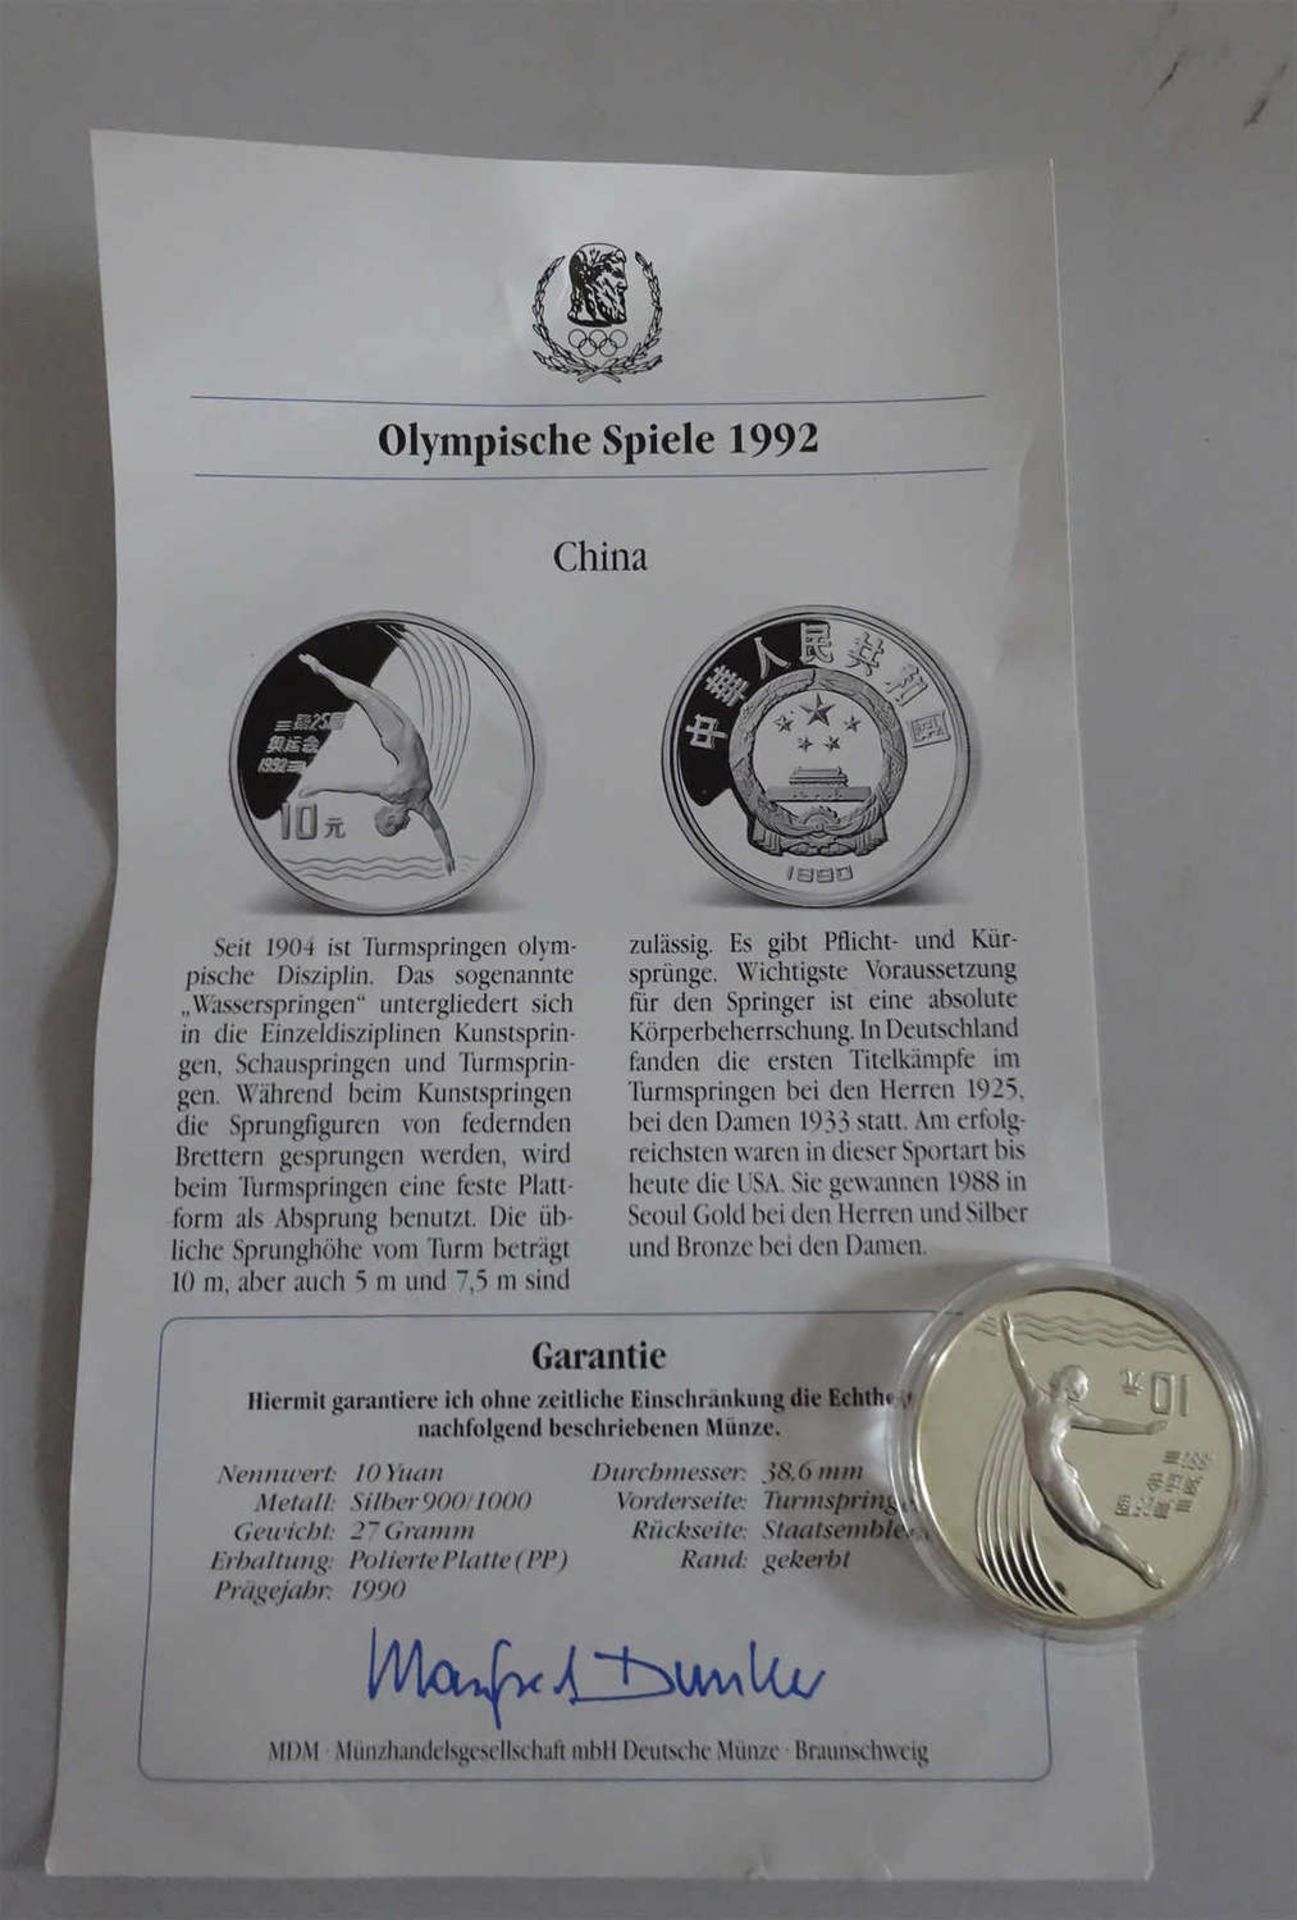 China 1990, 10 Yuan - Silbermünze "Olympische Spiele 1992 - Turmspringerin". In Kapsel. Erhaltung: